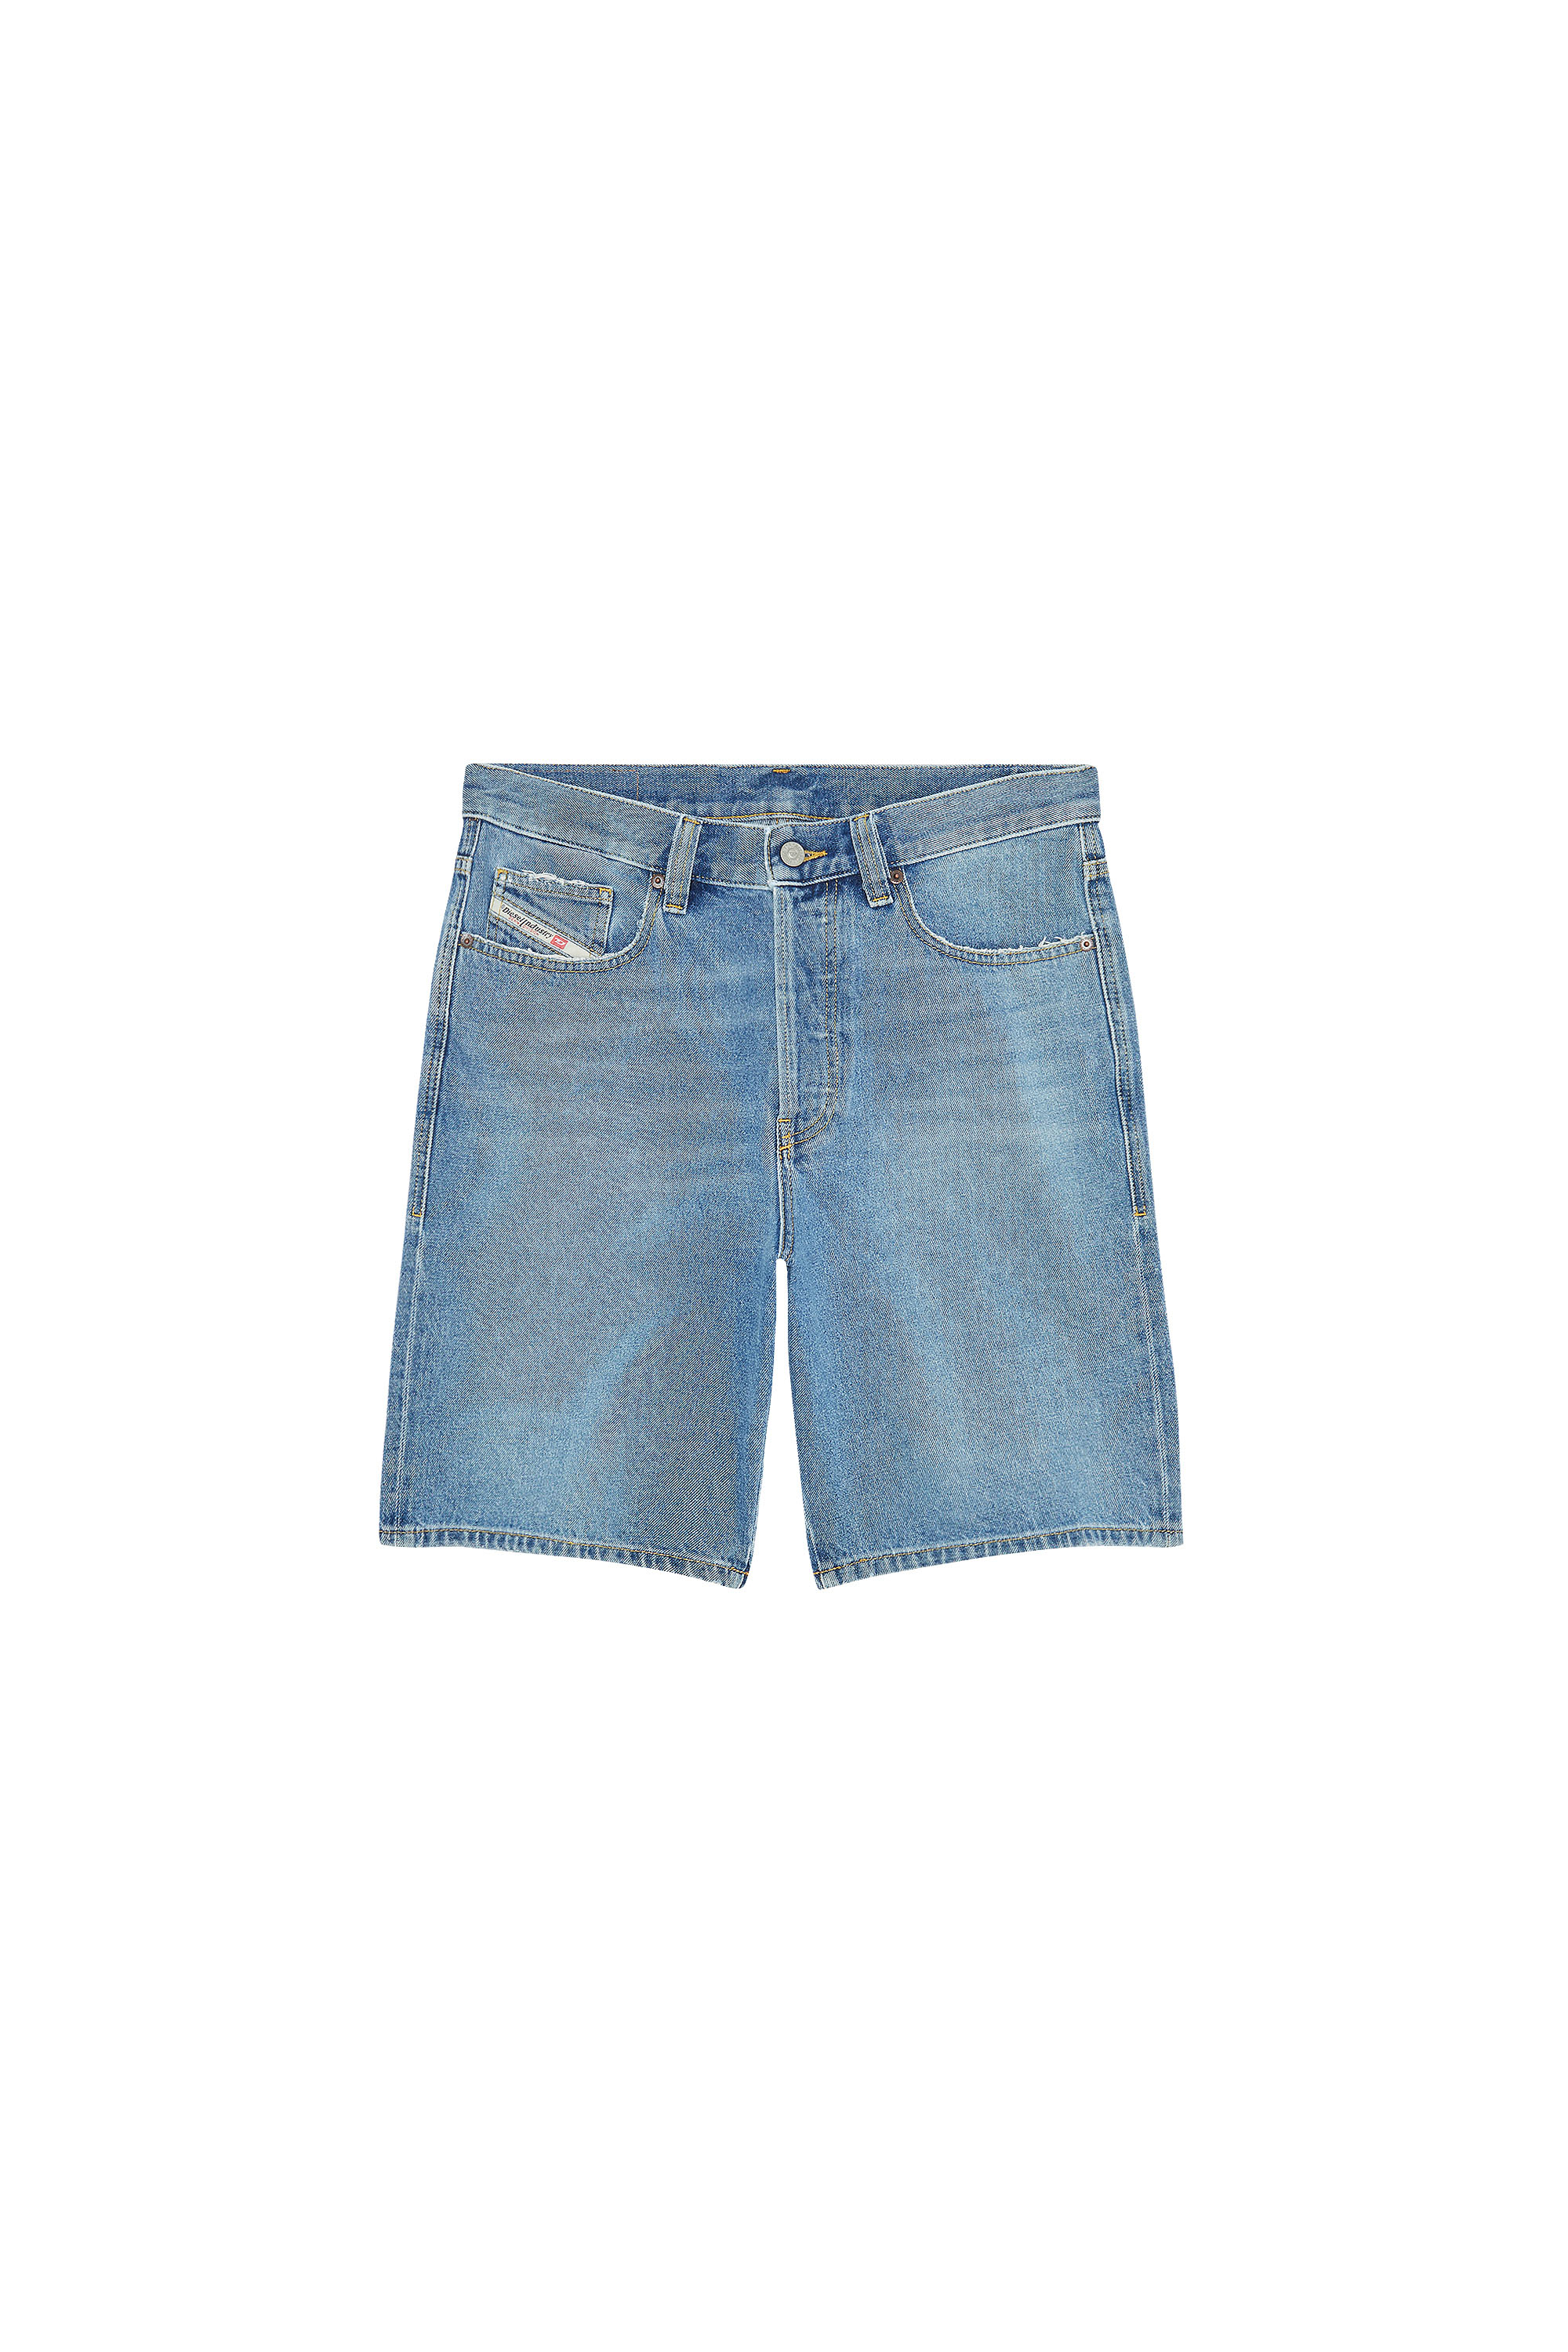 Diesel Olgah Denim Shorts Blue | ModeSens